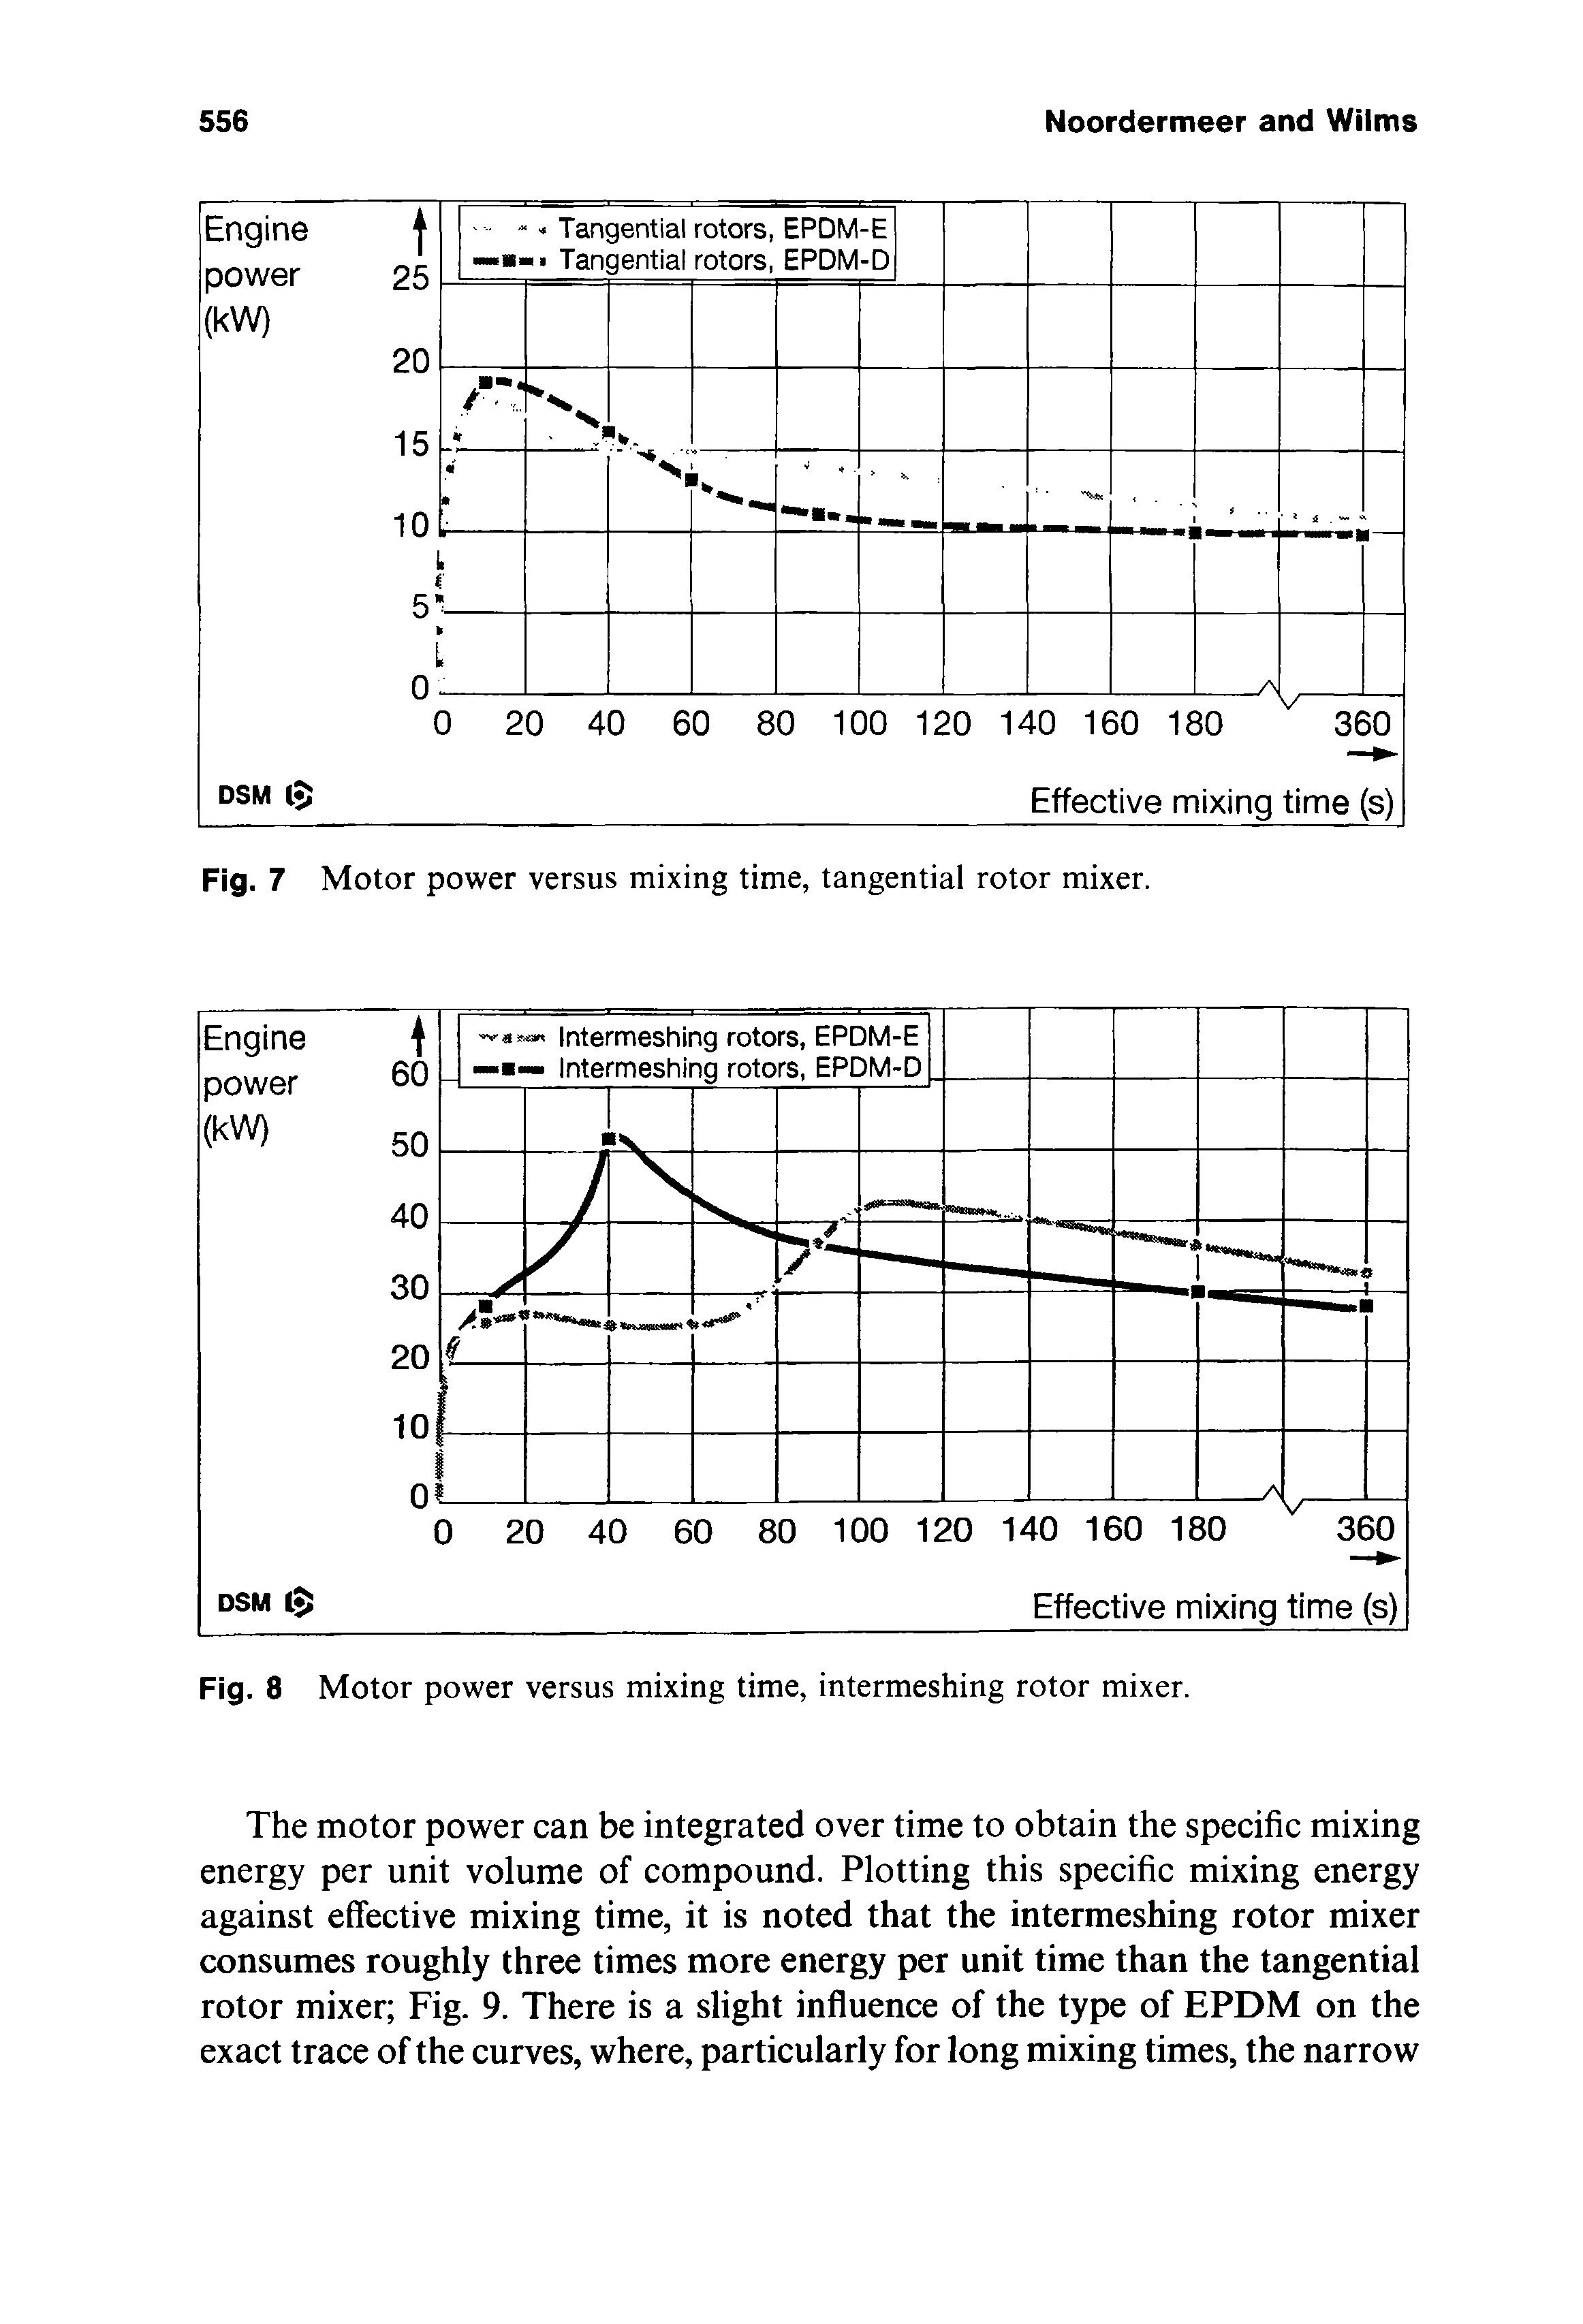 Fig. 8 Motor power versus mixing time, intermeshing rotor mixer.